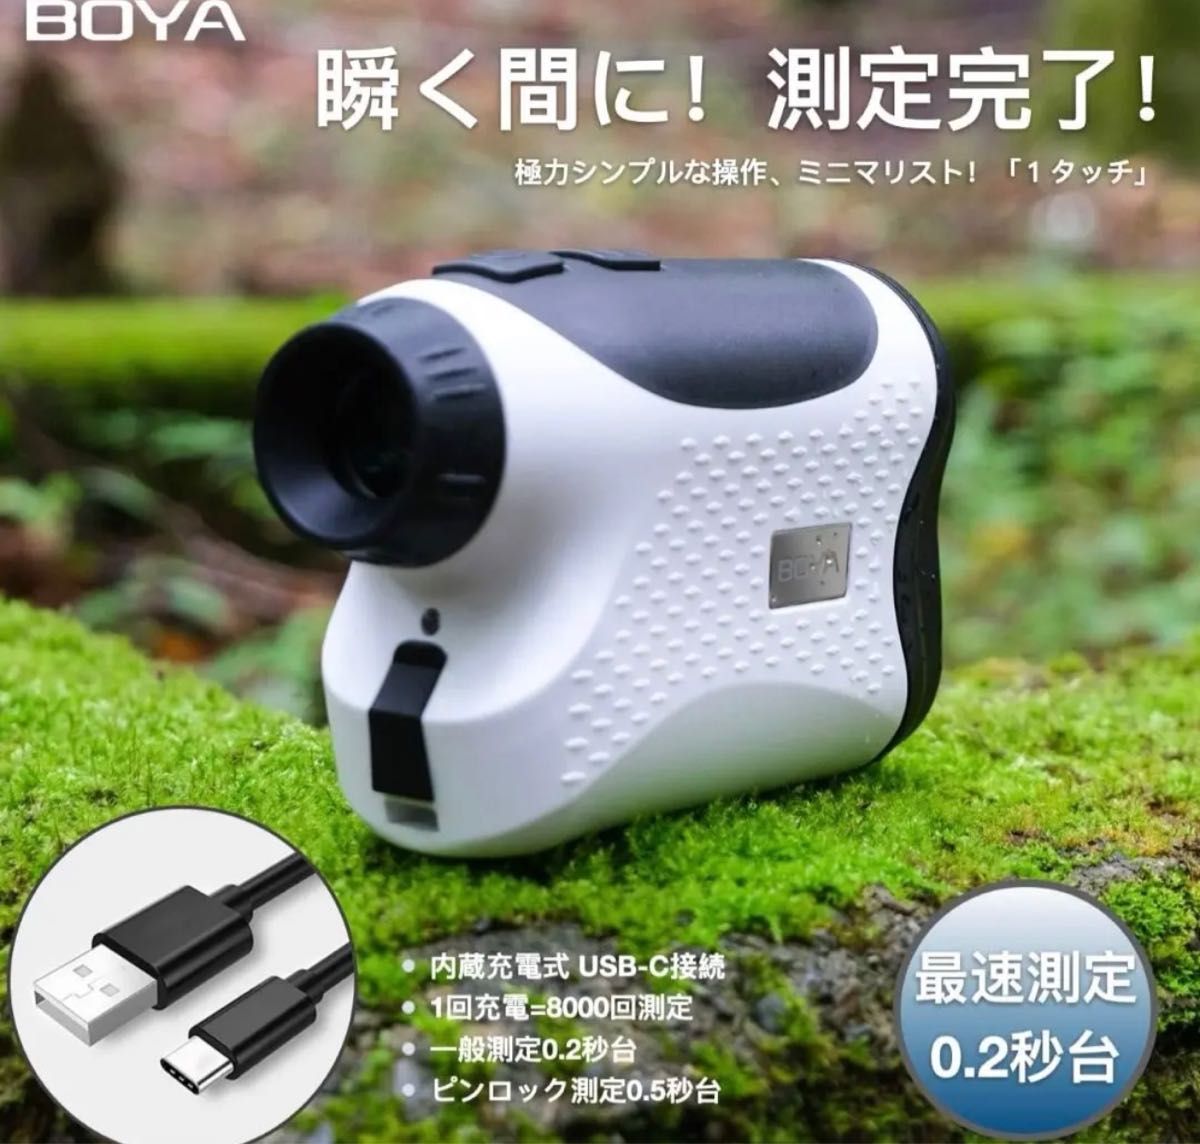 【新品】BOYA ゴルフ距離計 レーザー距離計 距離測定器 ゴルフ用品 測量機